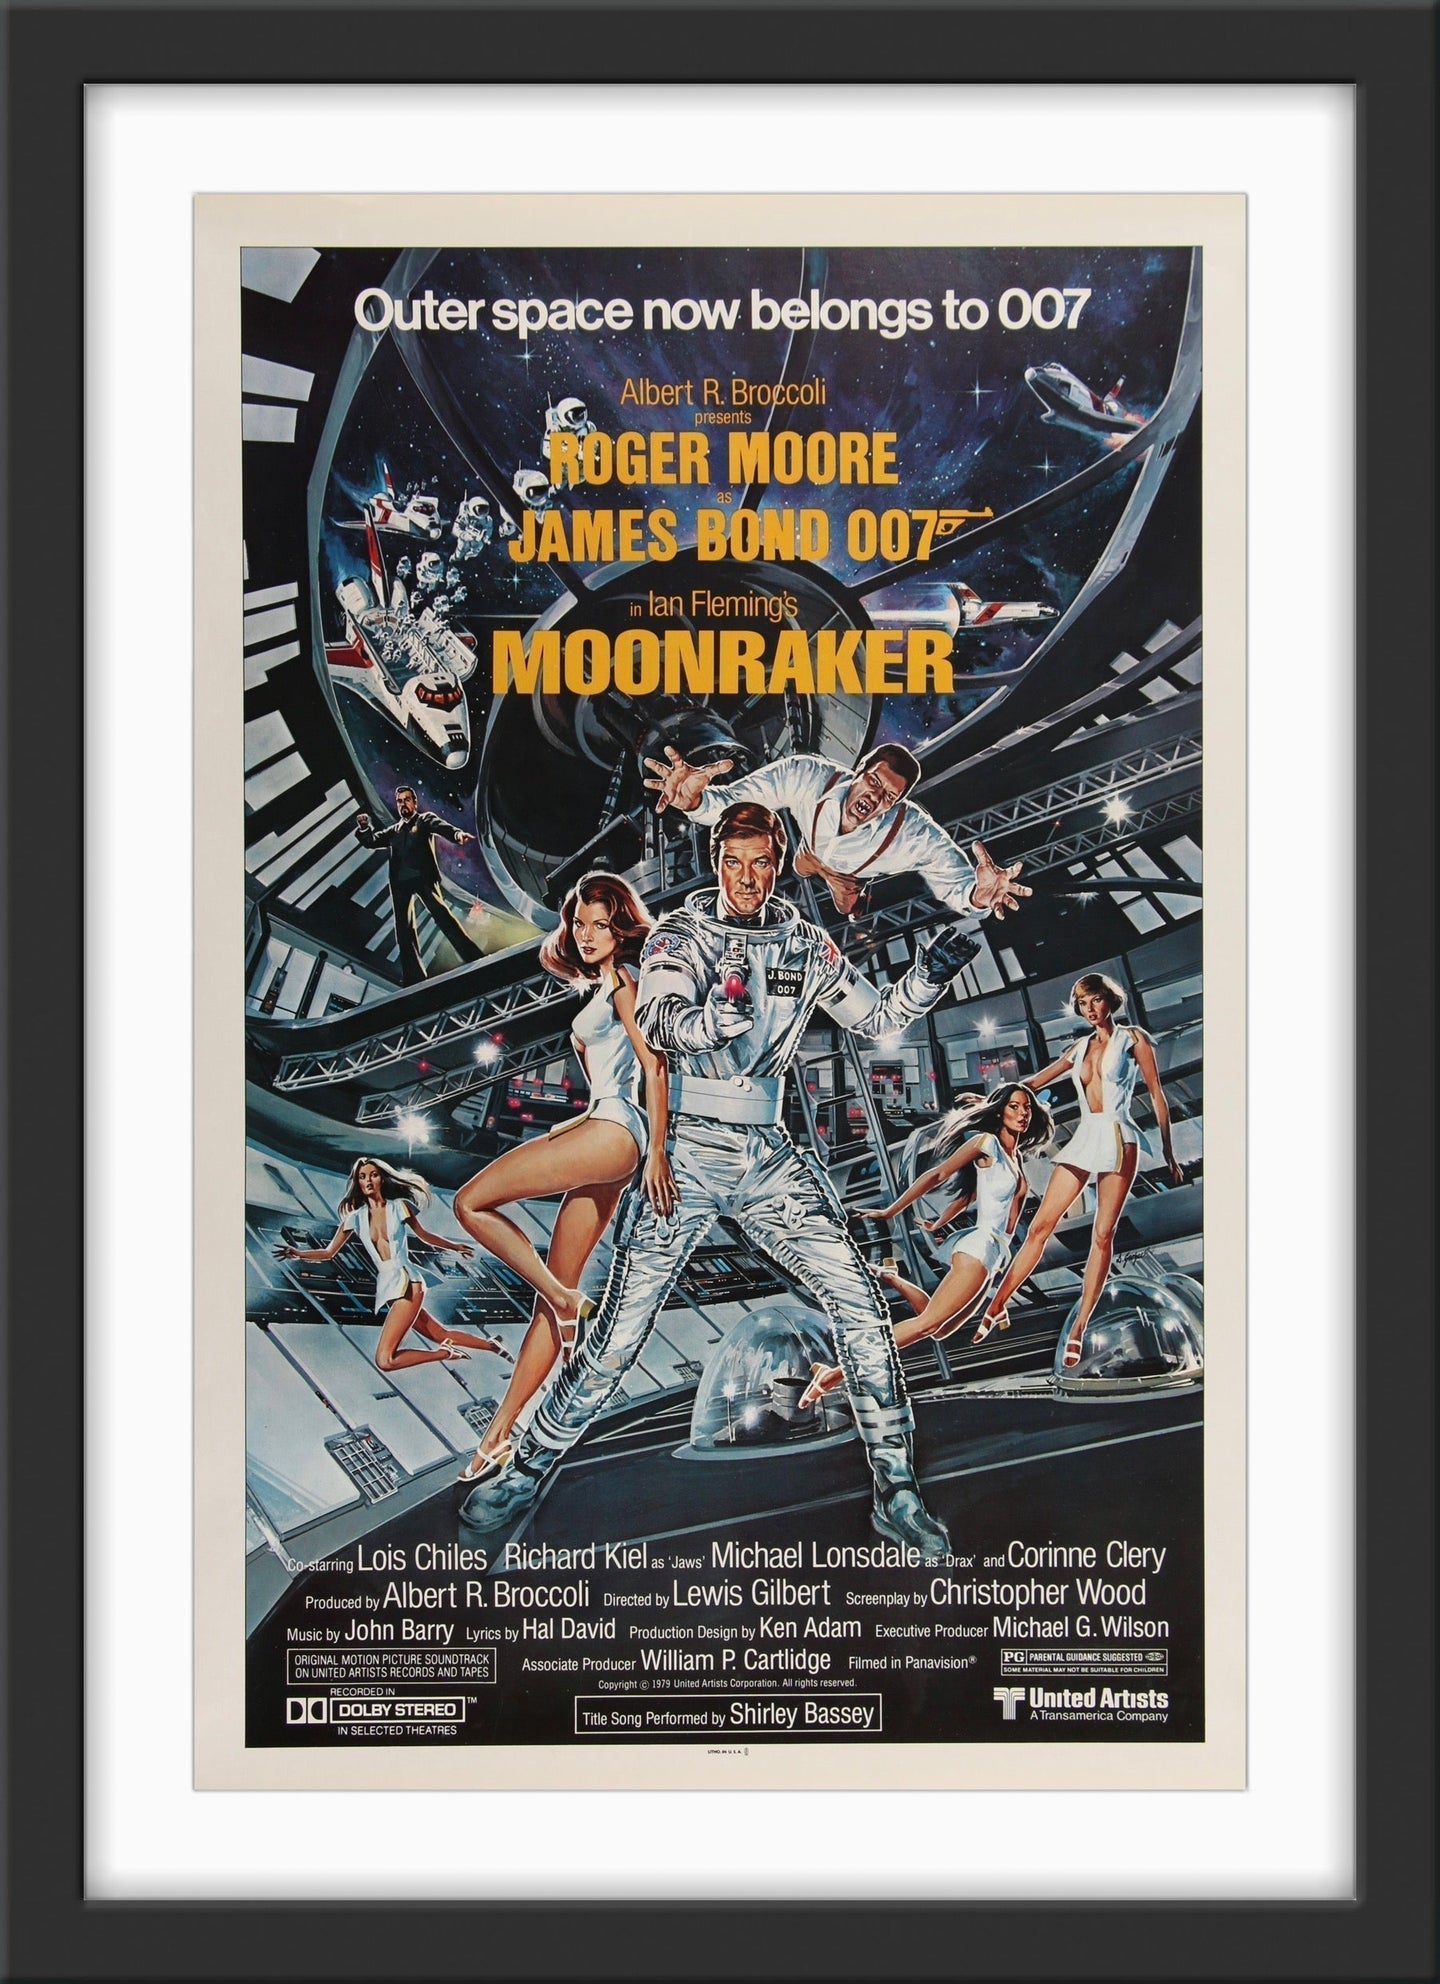 An original movie poster for the James Bond film Moonraker